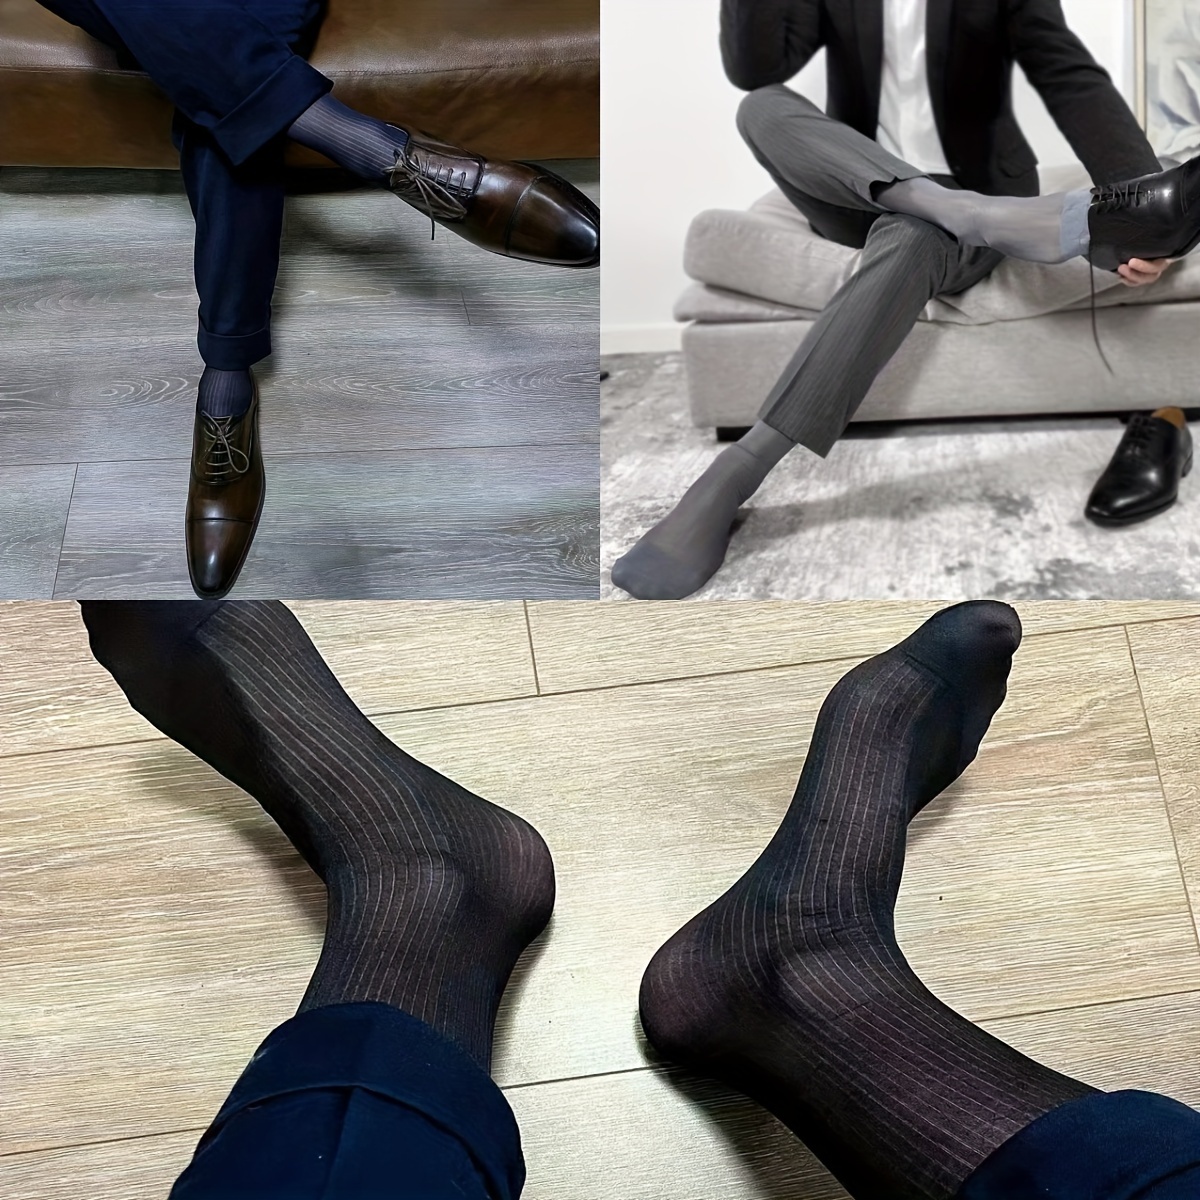 Uaussi 10 pares de calcetines de vestir ultrafinos para hombre, calcetines  de negocios de seda transparente, pantalones de trabajo de nailon suave